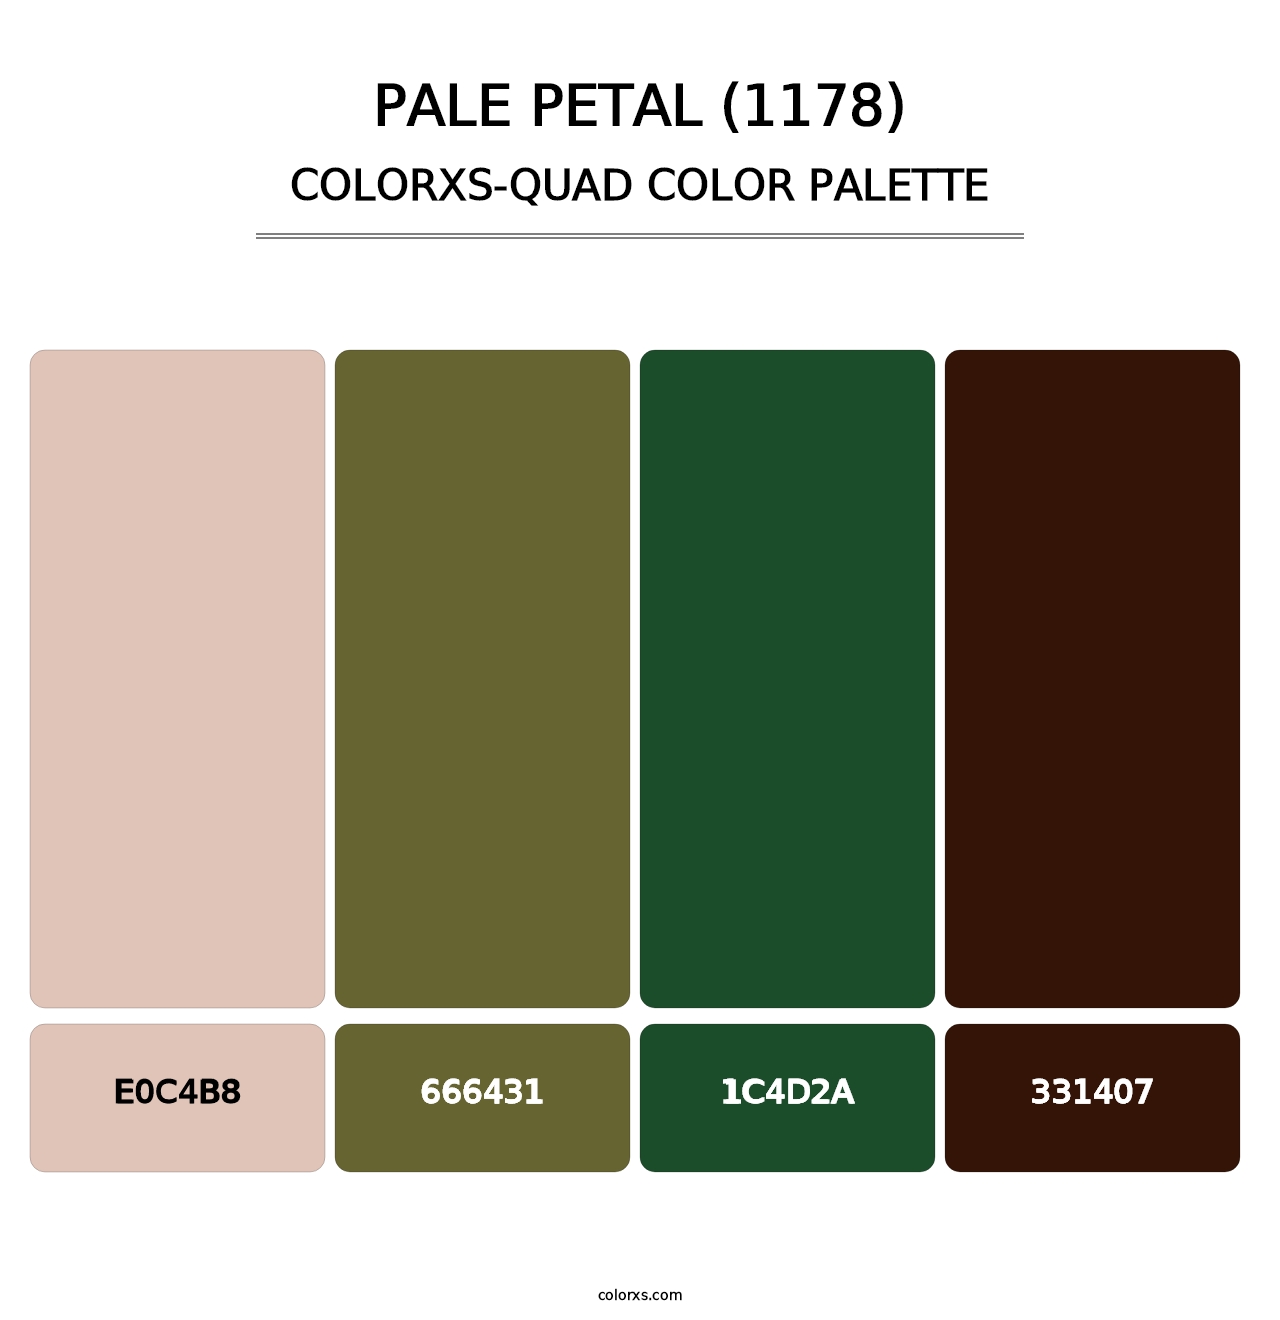 Pale Petal (1178) - Colorxs Quad Palette